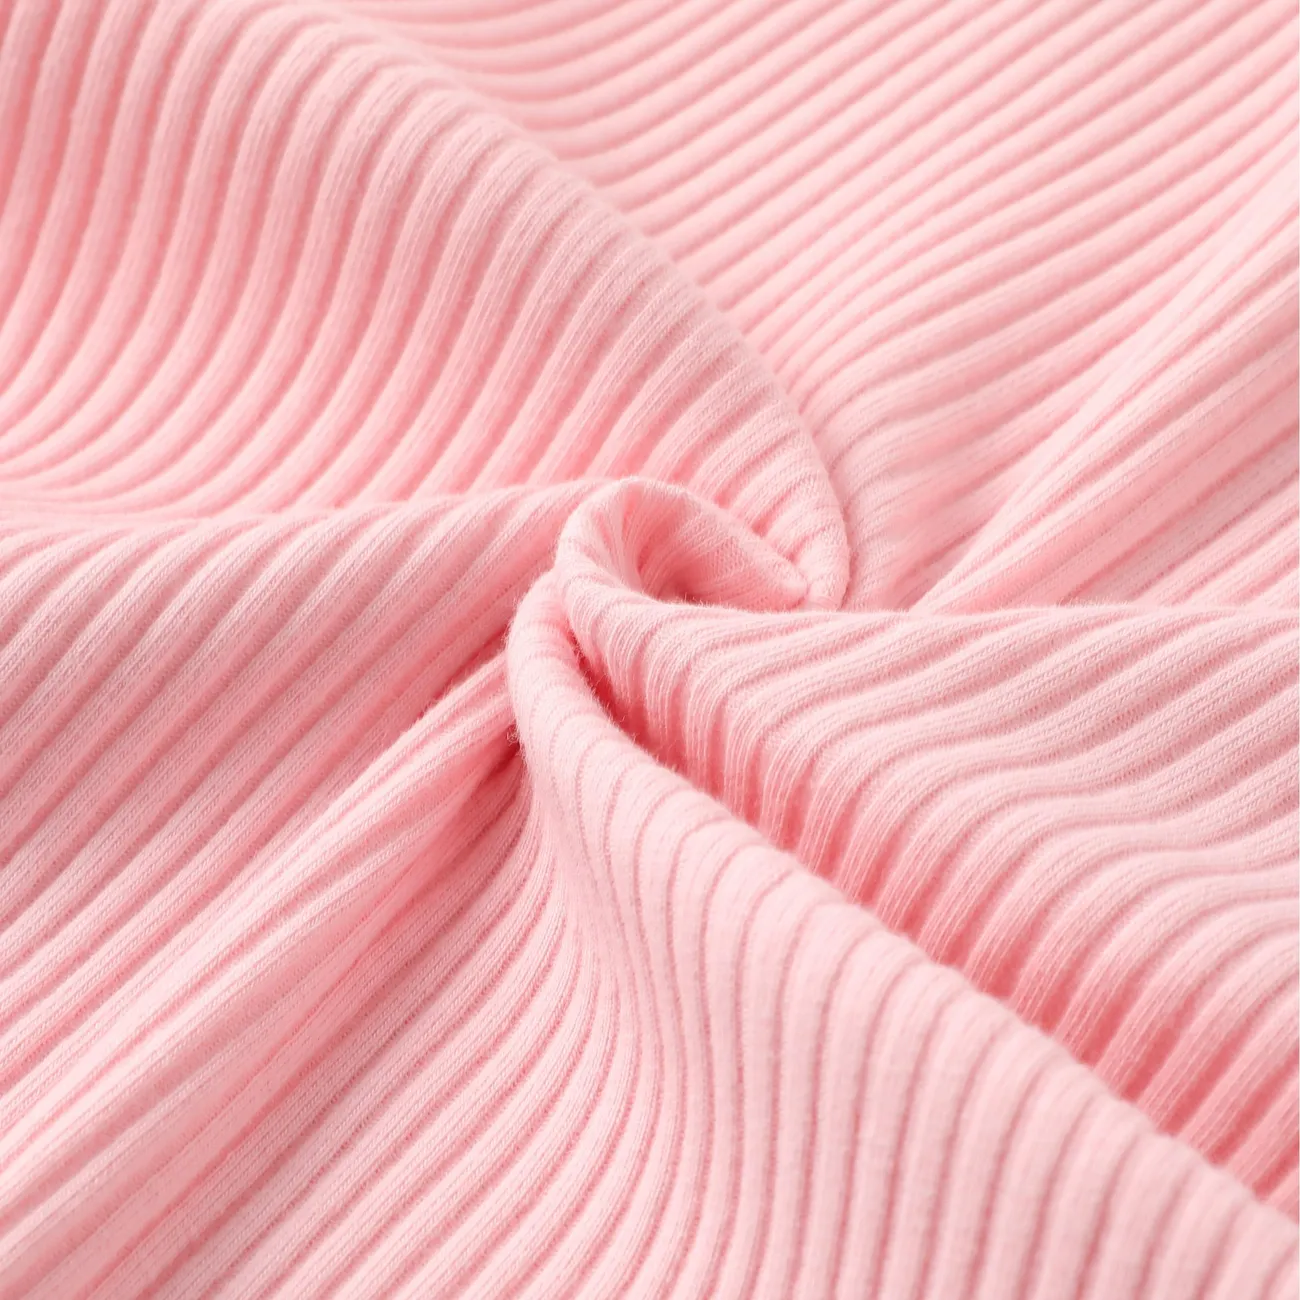 Kinder Mädchen Schulterfrei Unifarben Kleider rosa big image 1